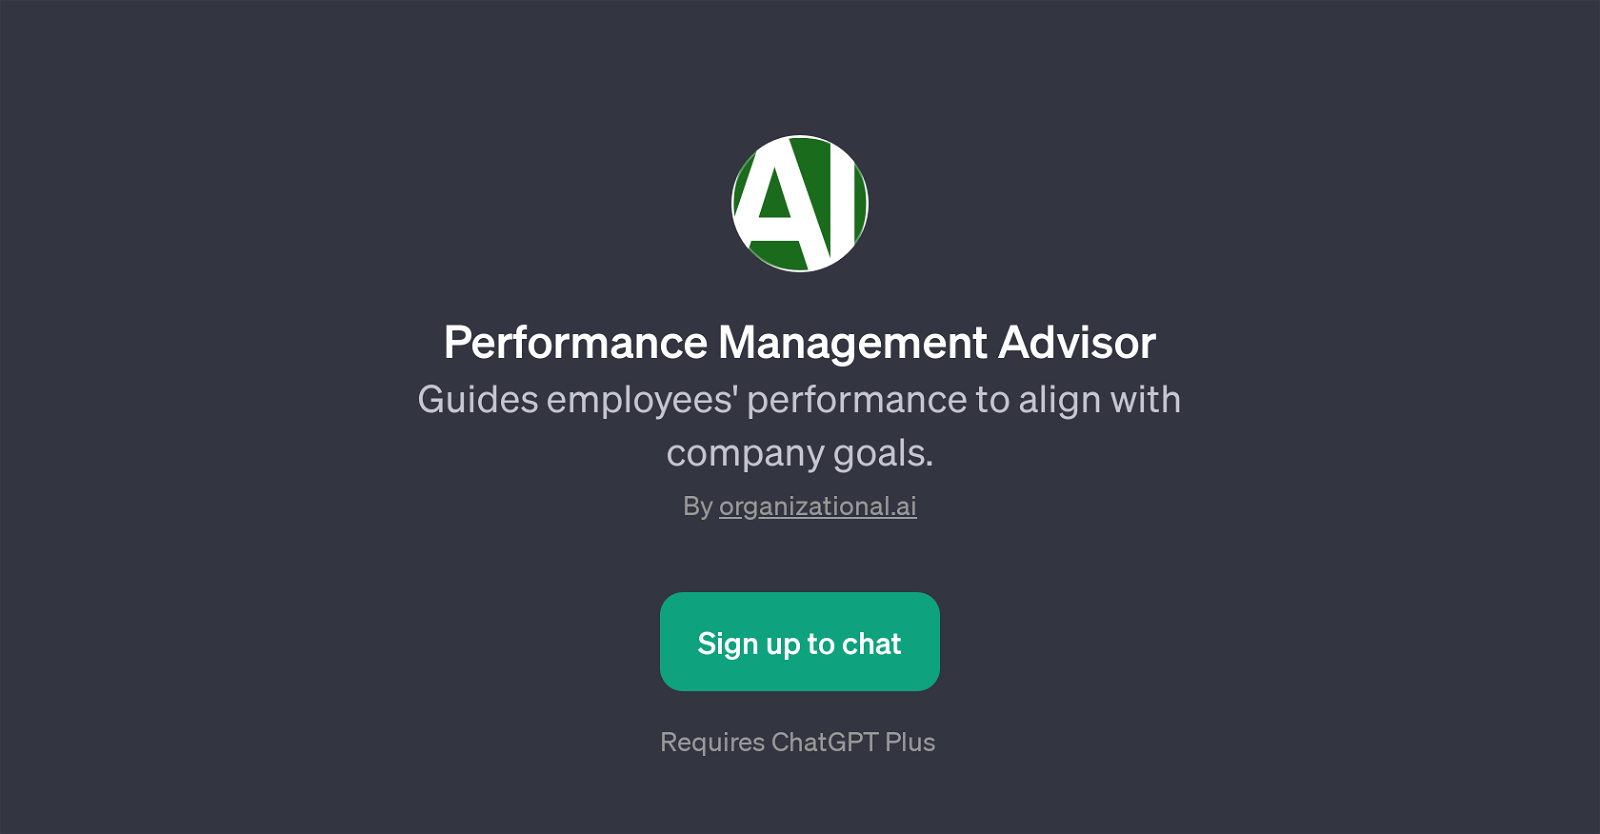 Performance Management Advisor website